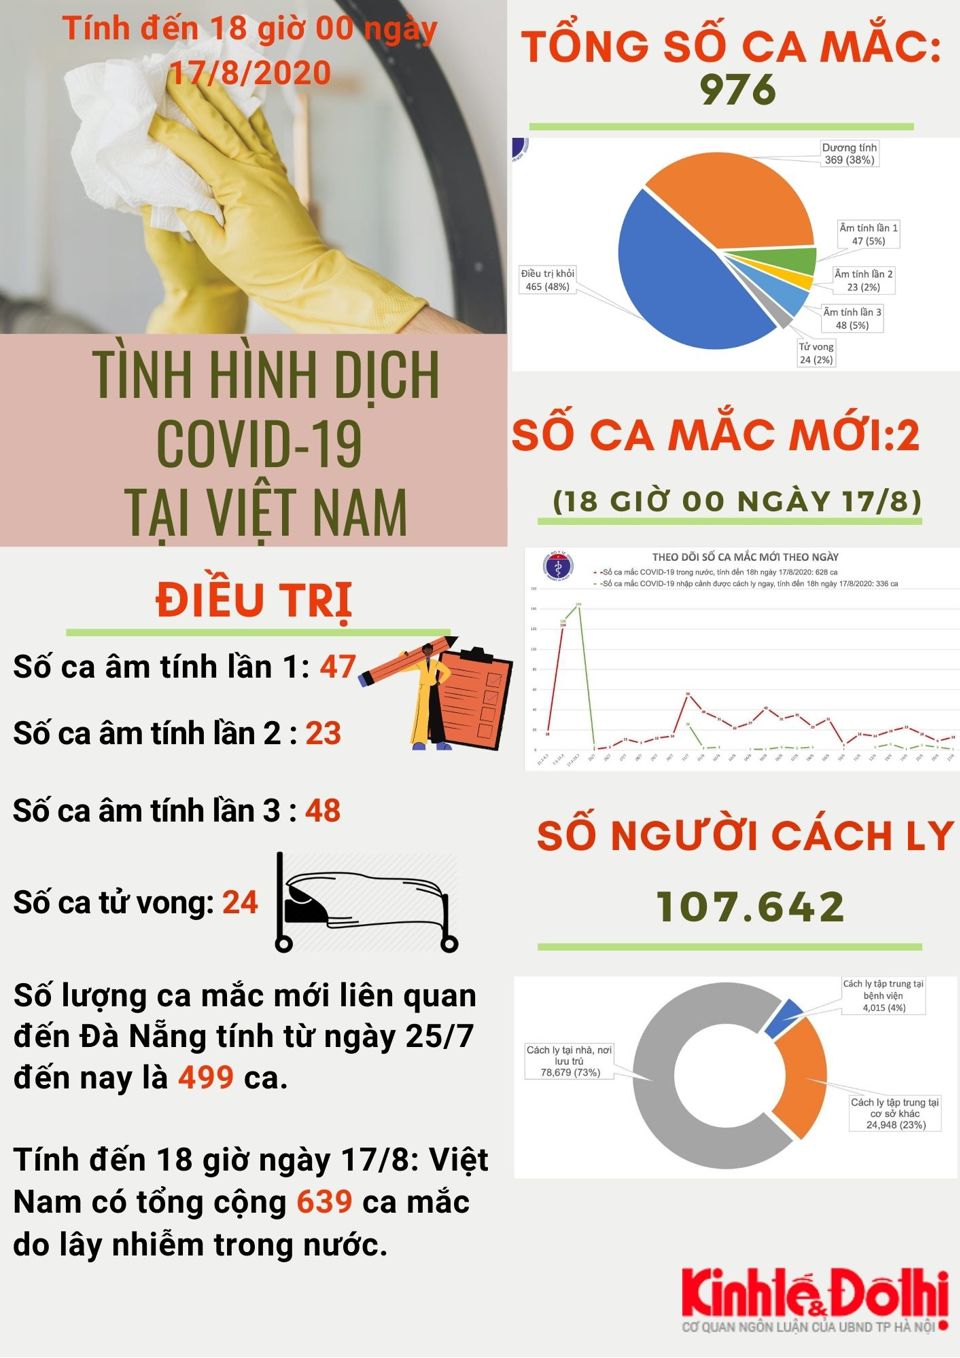 [Infographic] Việt Nam có 639 ca mắc Covid-19 do lây nhiễm trong nước - Ảnh 1